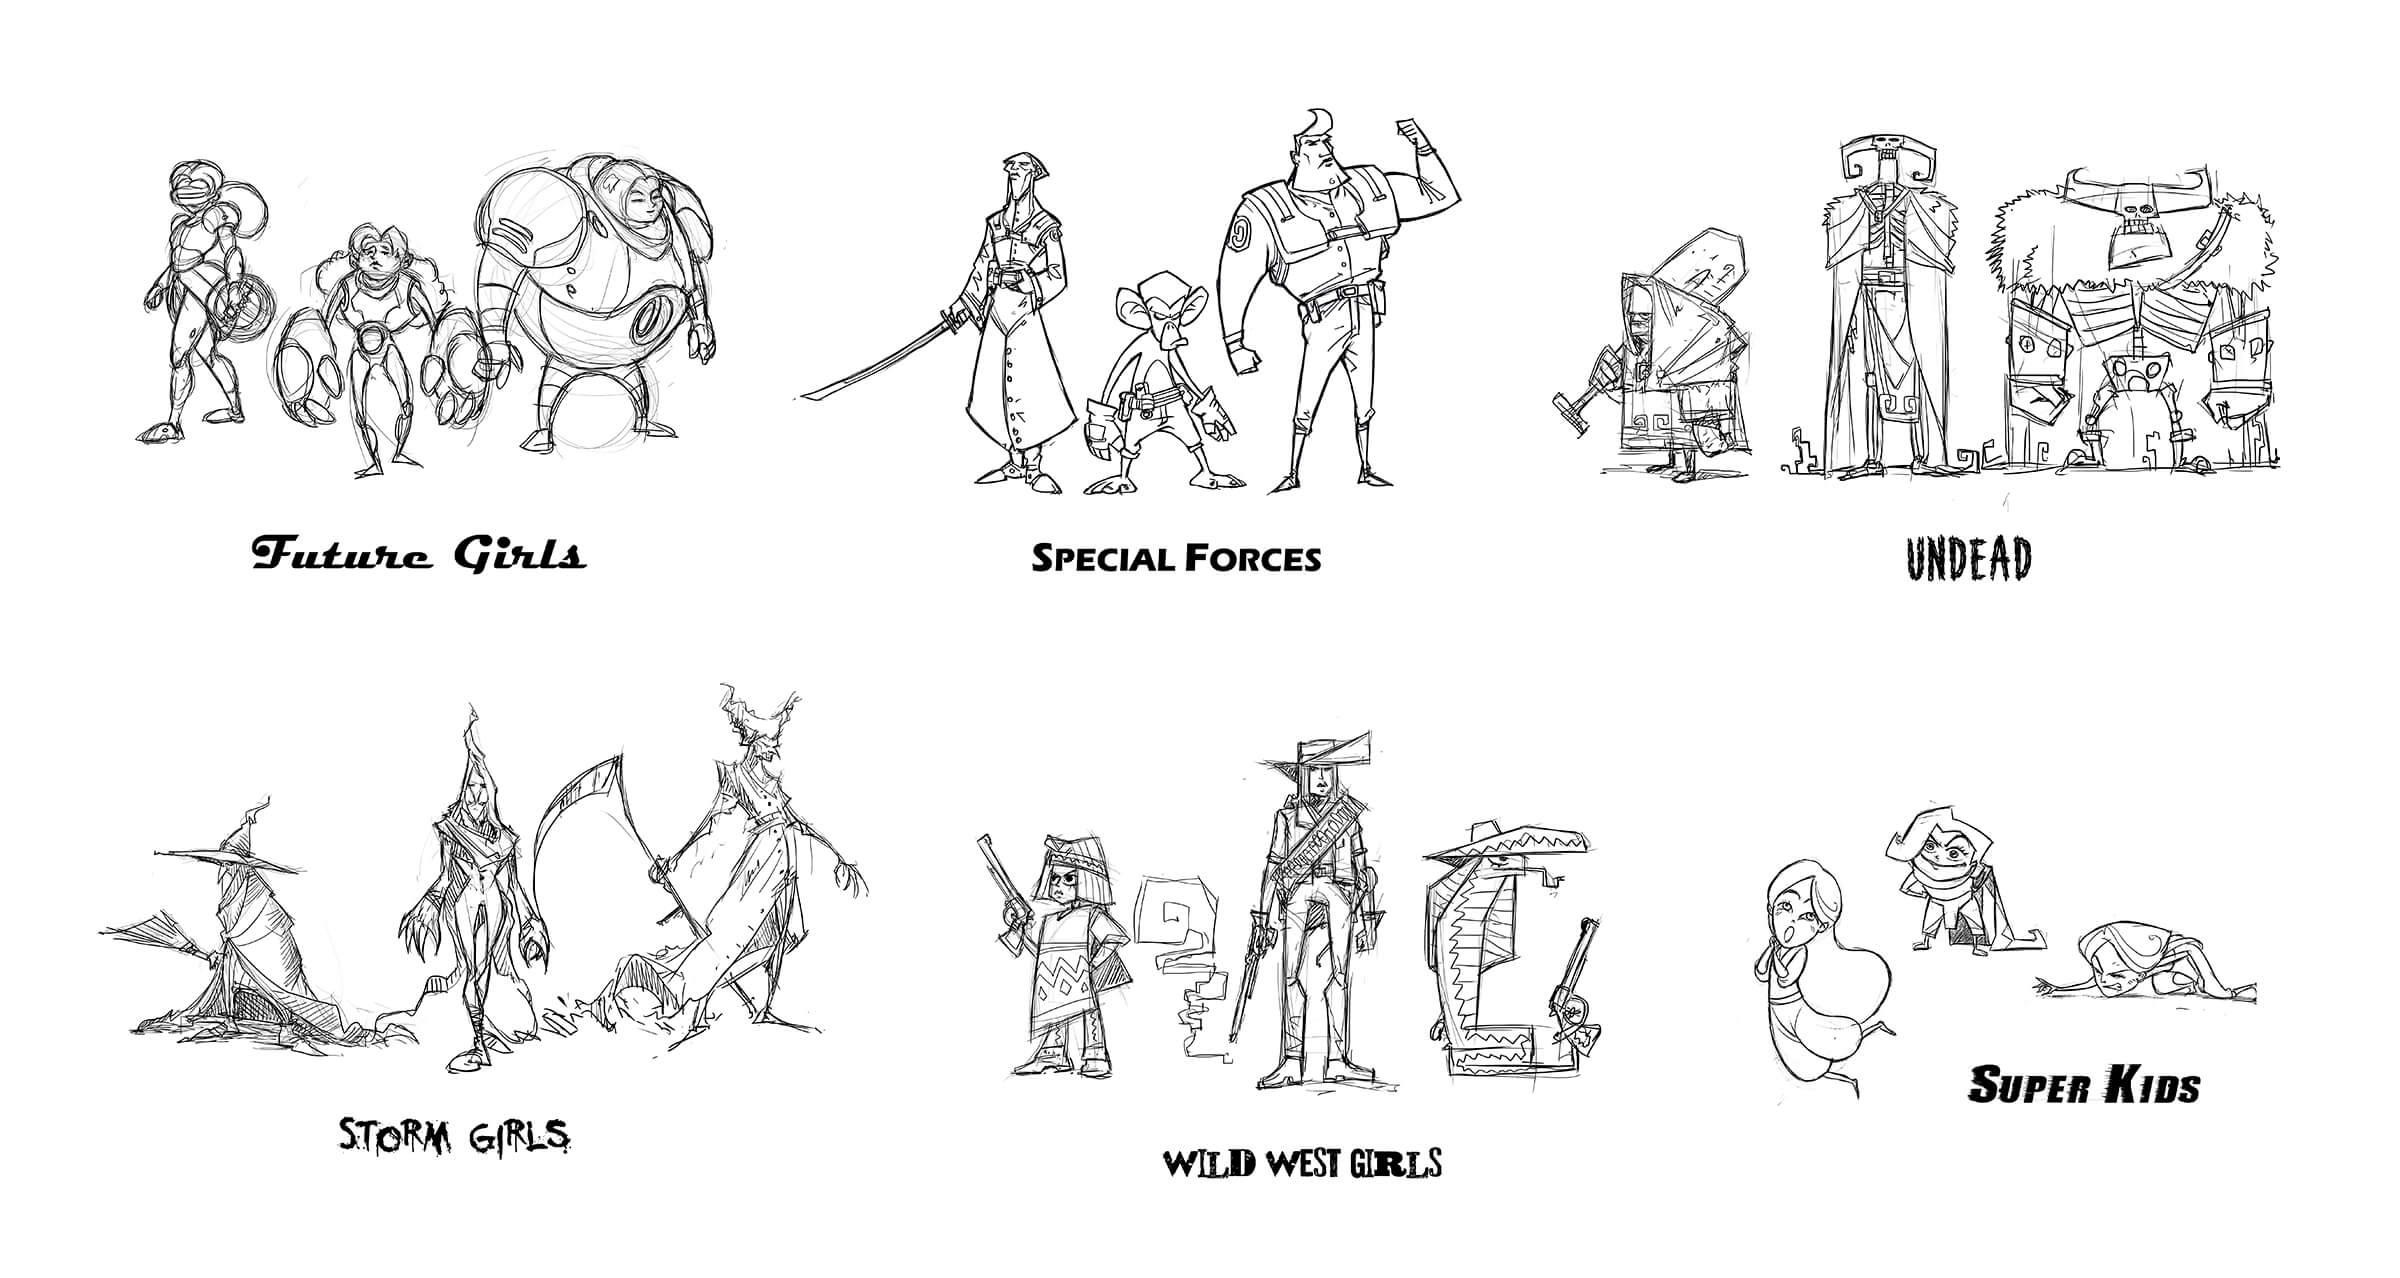 Bocetos de 6 grupos de combatientes, en categorías como No-muertos, Super Kids, Wild West Girls y Fuerzas especiales.